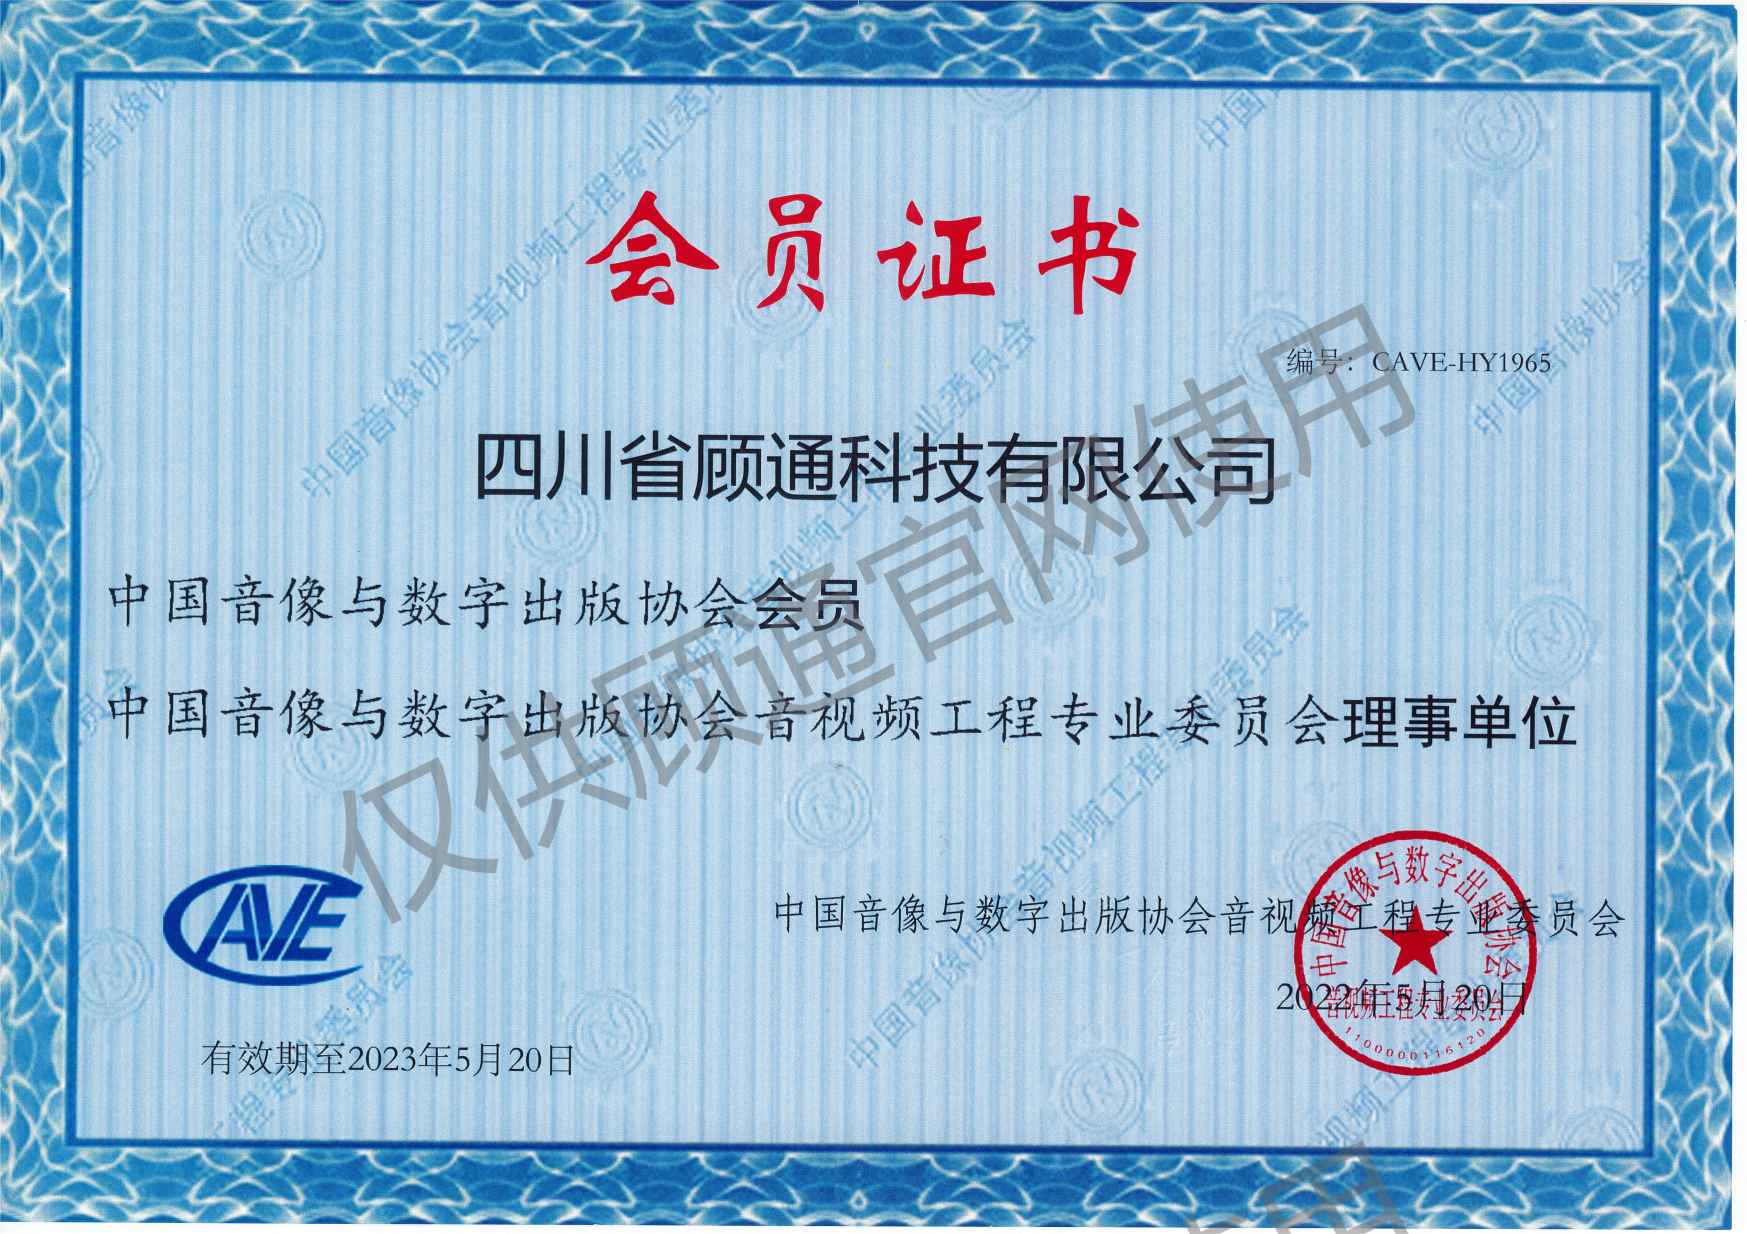 中国音像与数字出版协会会员证书